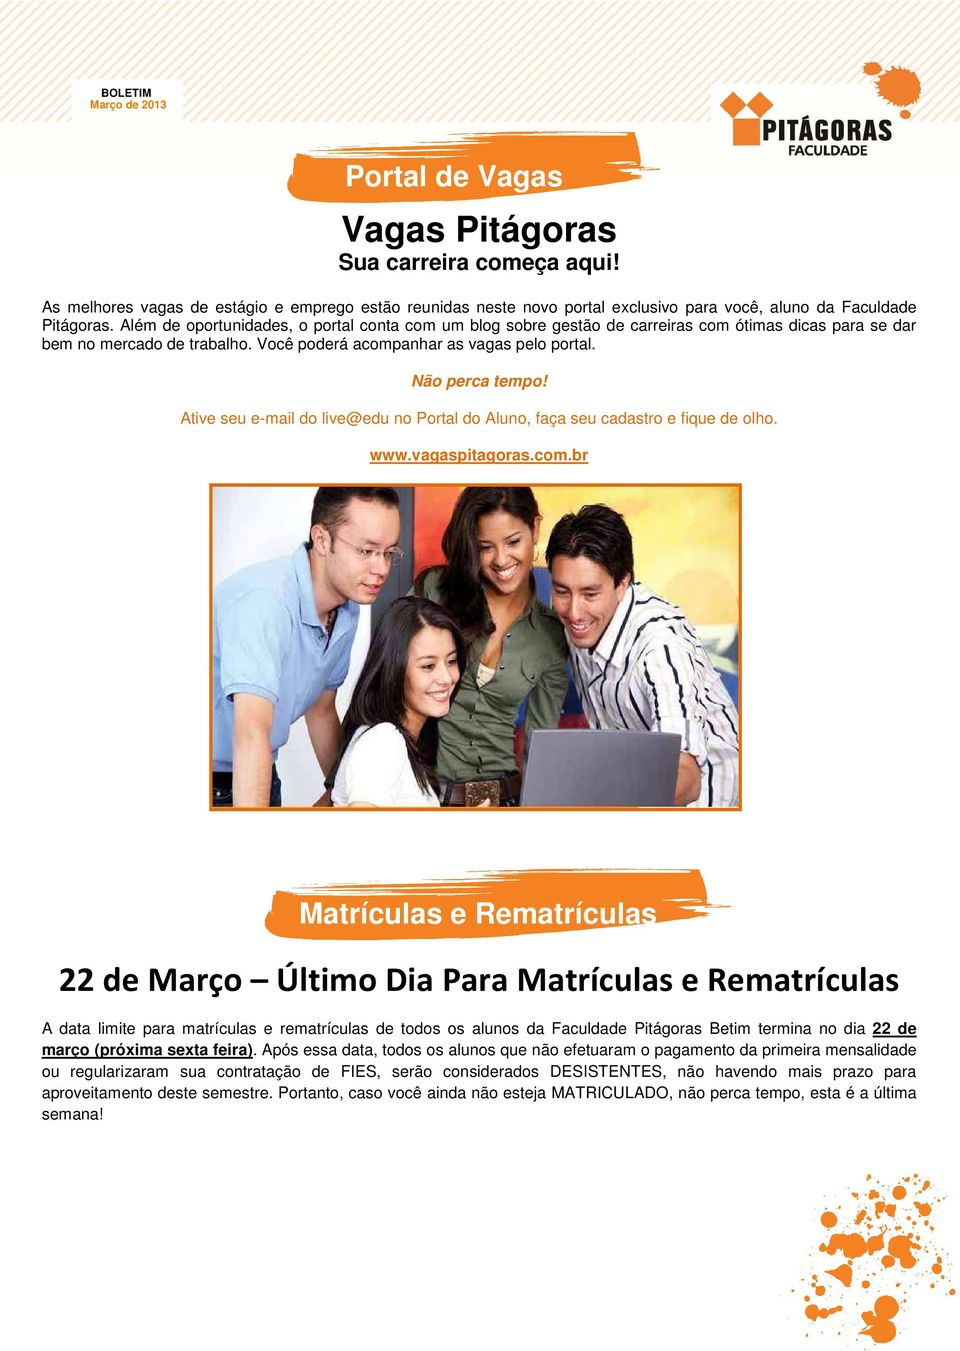 Ative seu e-mail do live@edu no Portal do Aluno, faça seu cadastro e fique de olho. www.vagaspitagoras.com.